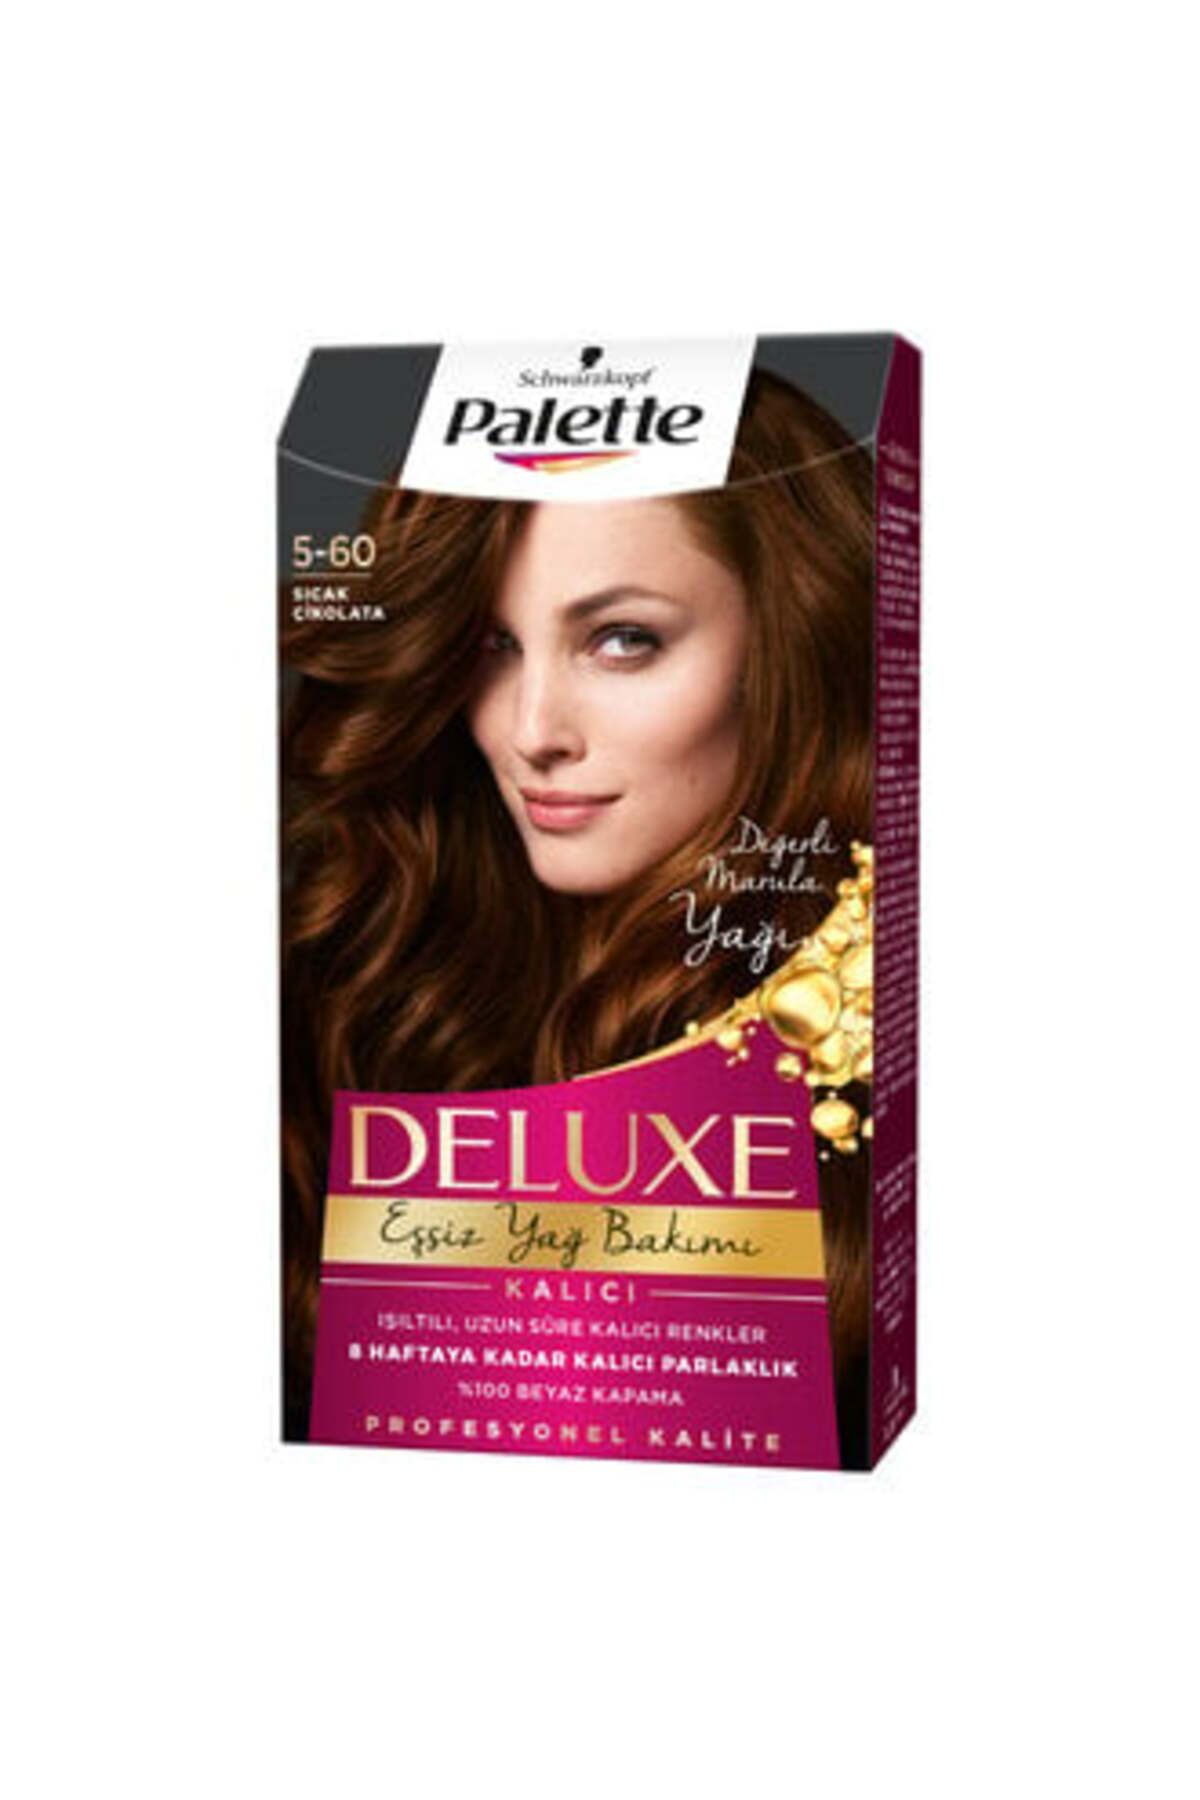 Palette Deluxe Saç Boyası Sıcak Çikolata 5-60 80 Ml ( 1 ADET )